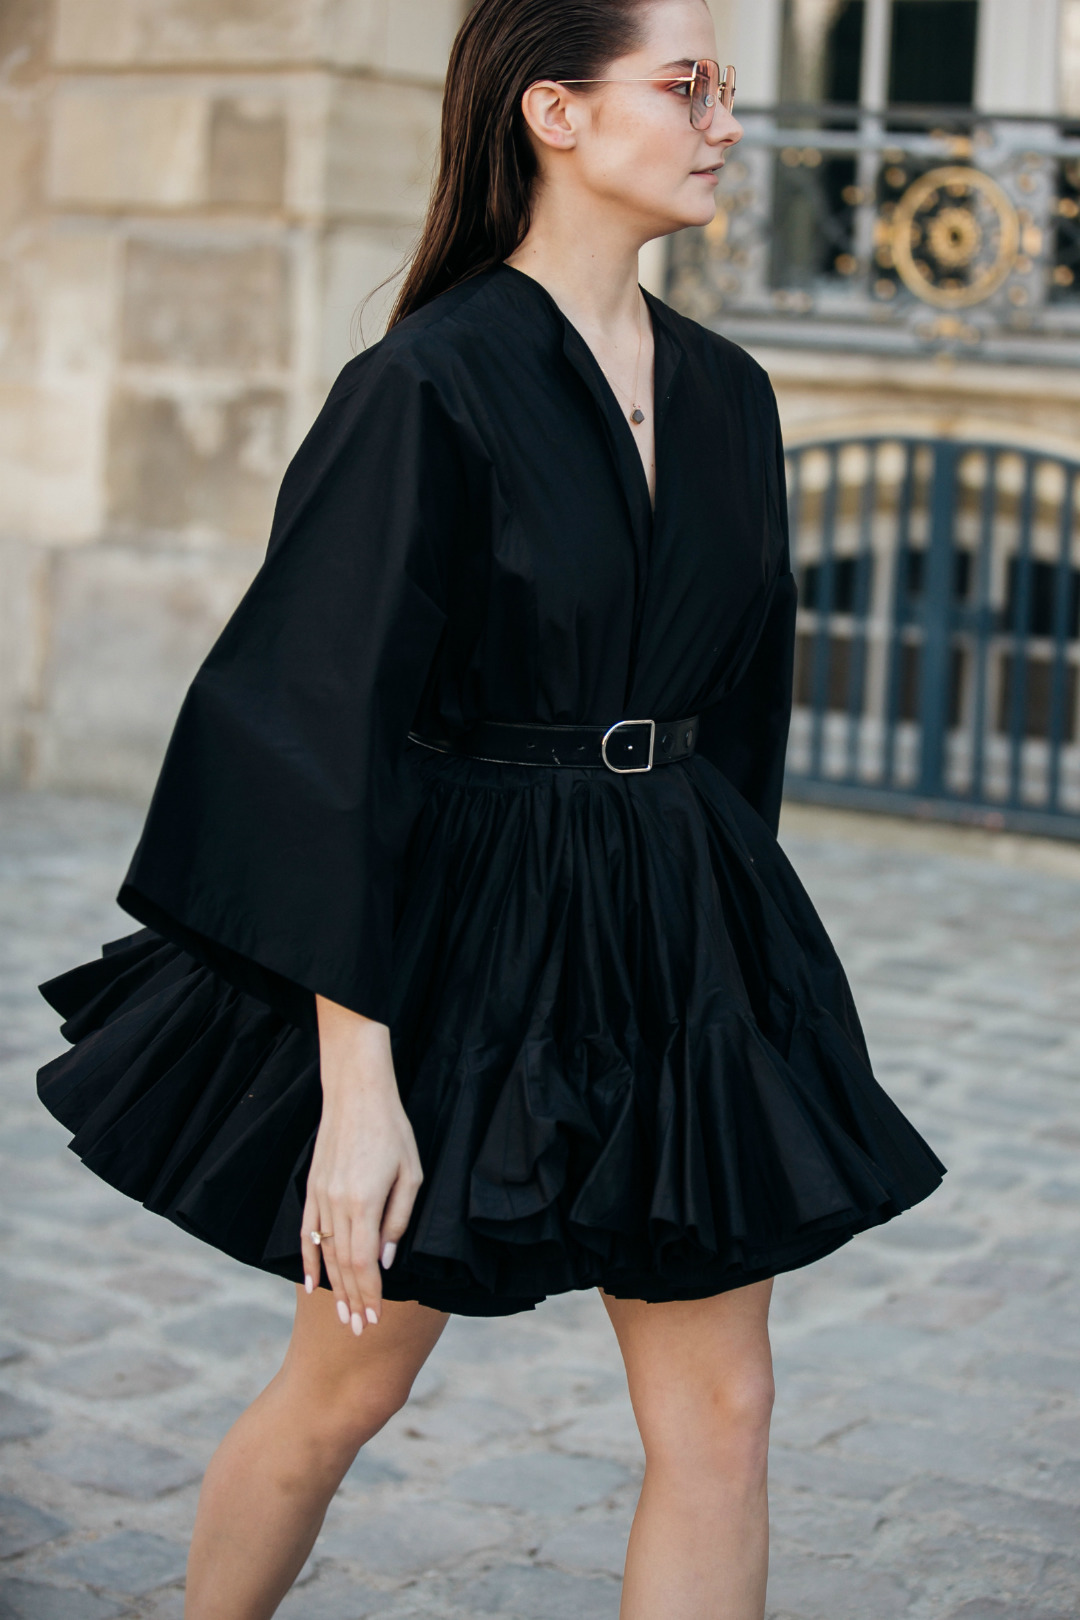 Sokak Stili: 2019-20 Sonbahar/Kış Paris Moda Haftası 1. Gün